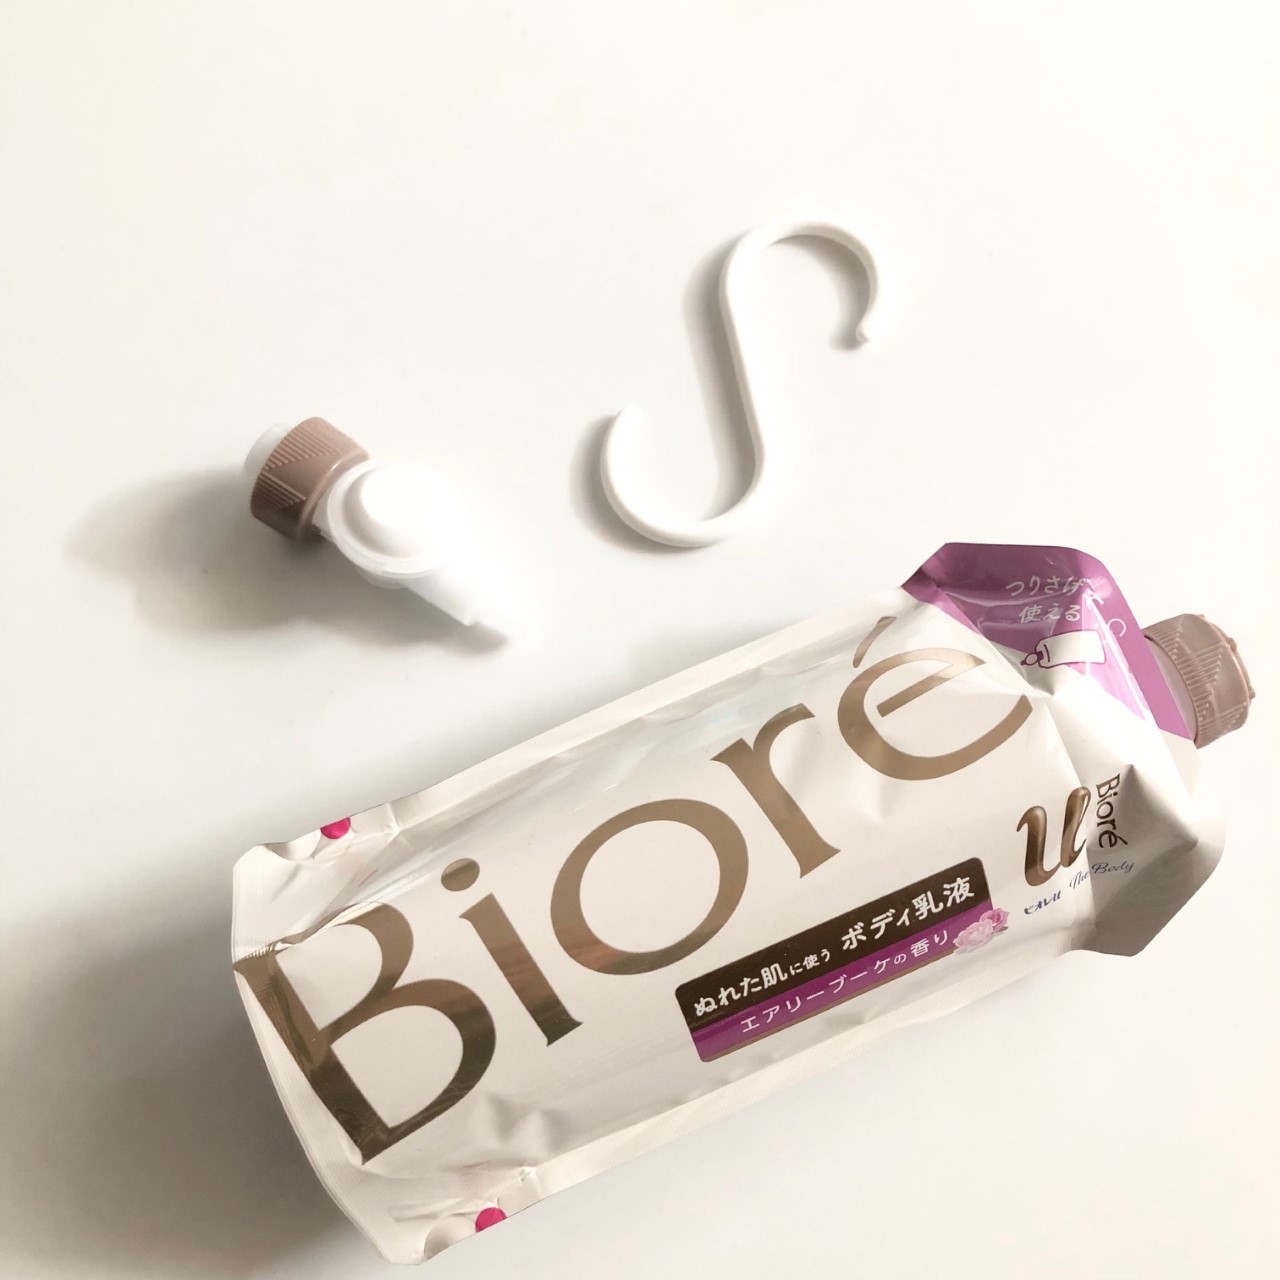 Bioré u(ビオレユー) ザ ボディ ぬれた肌に使う ボディ乳液の良い点・メリットに関するindexさんの口コミ画像1